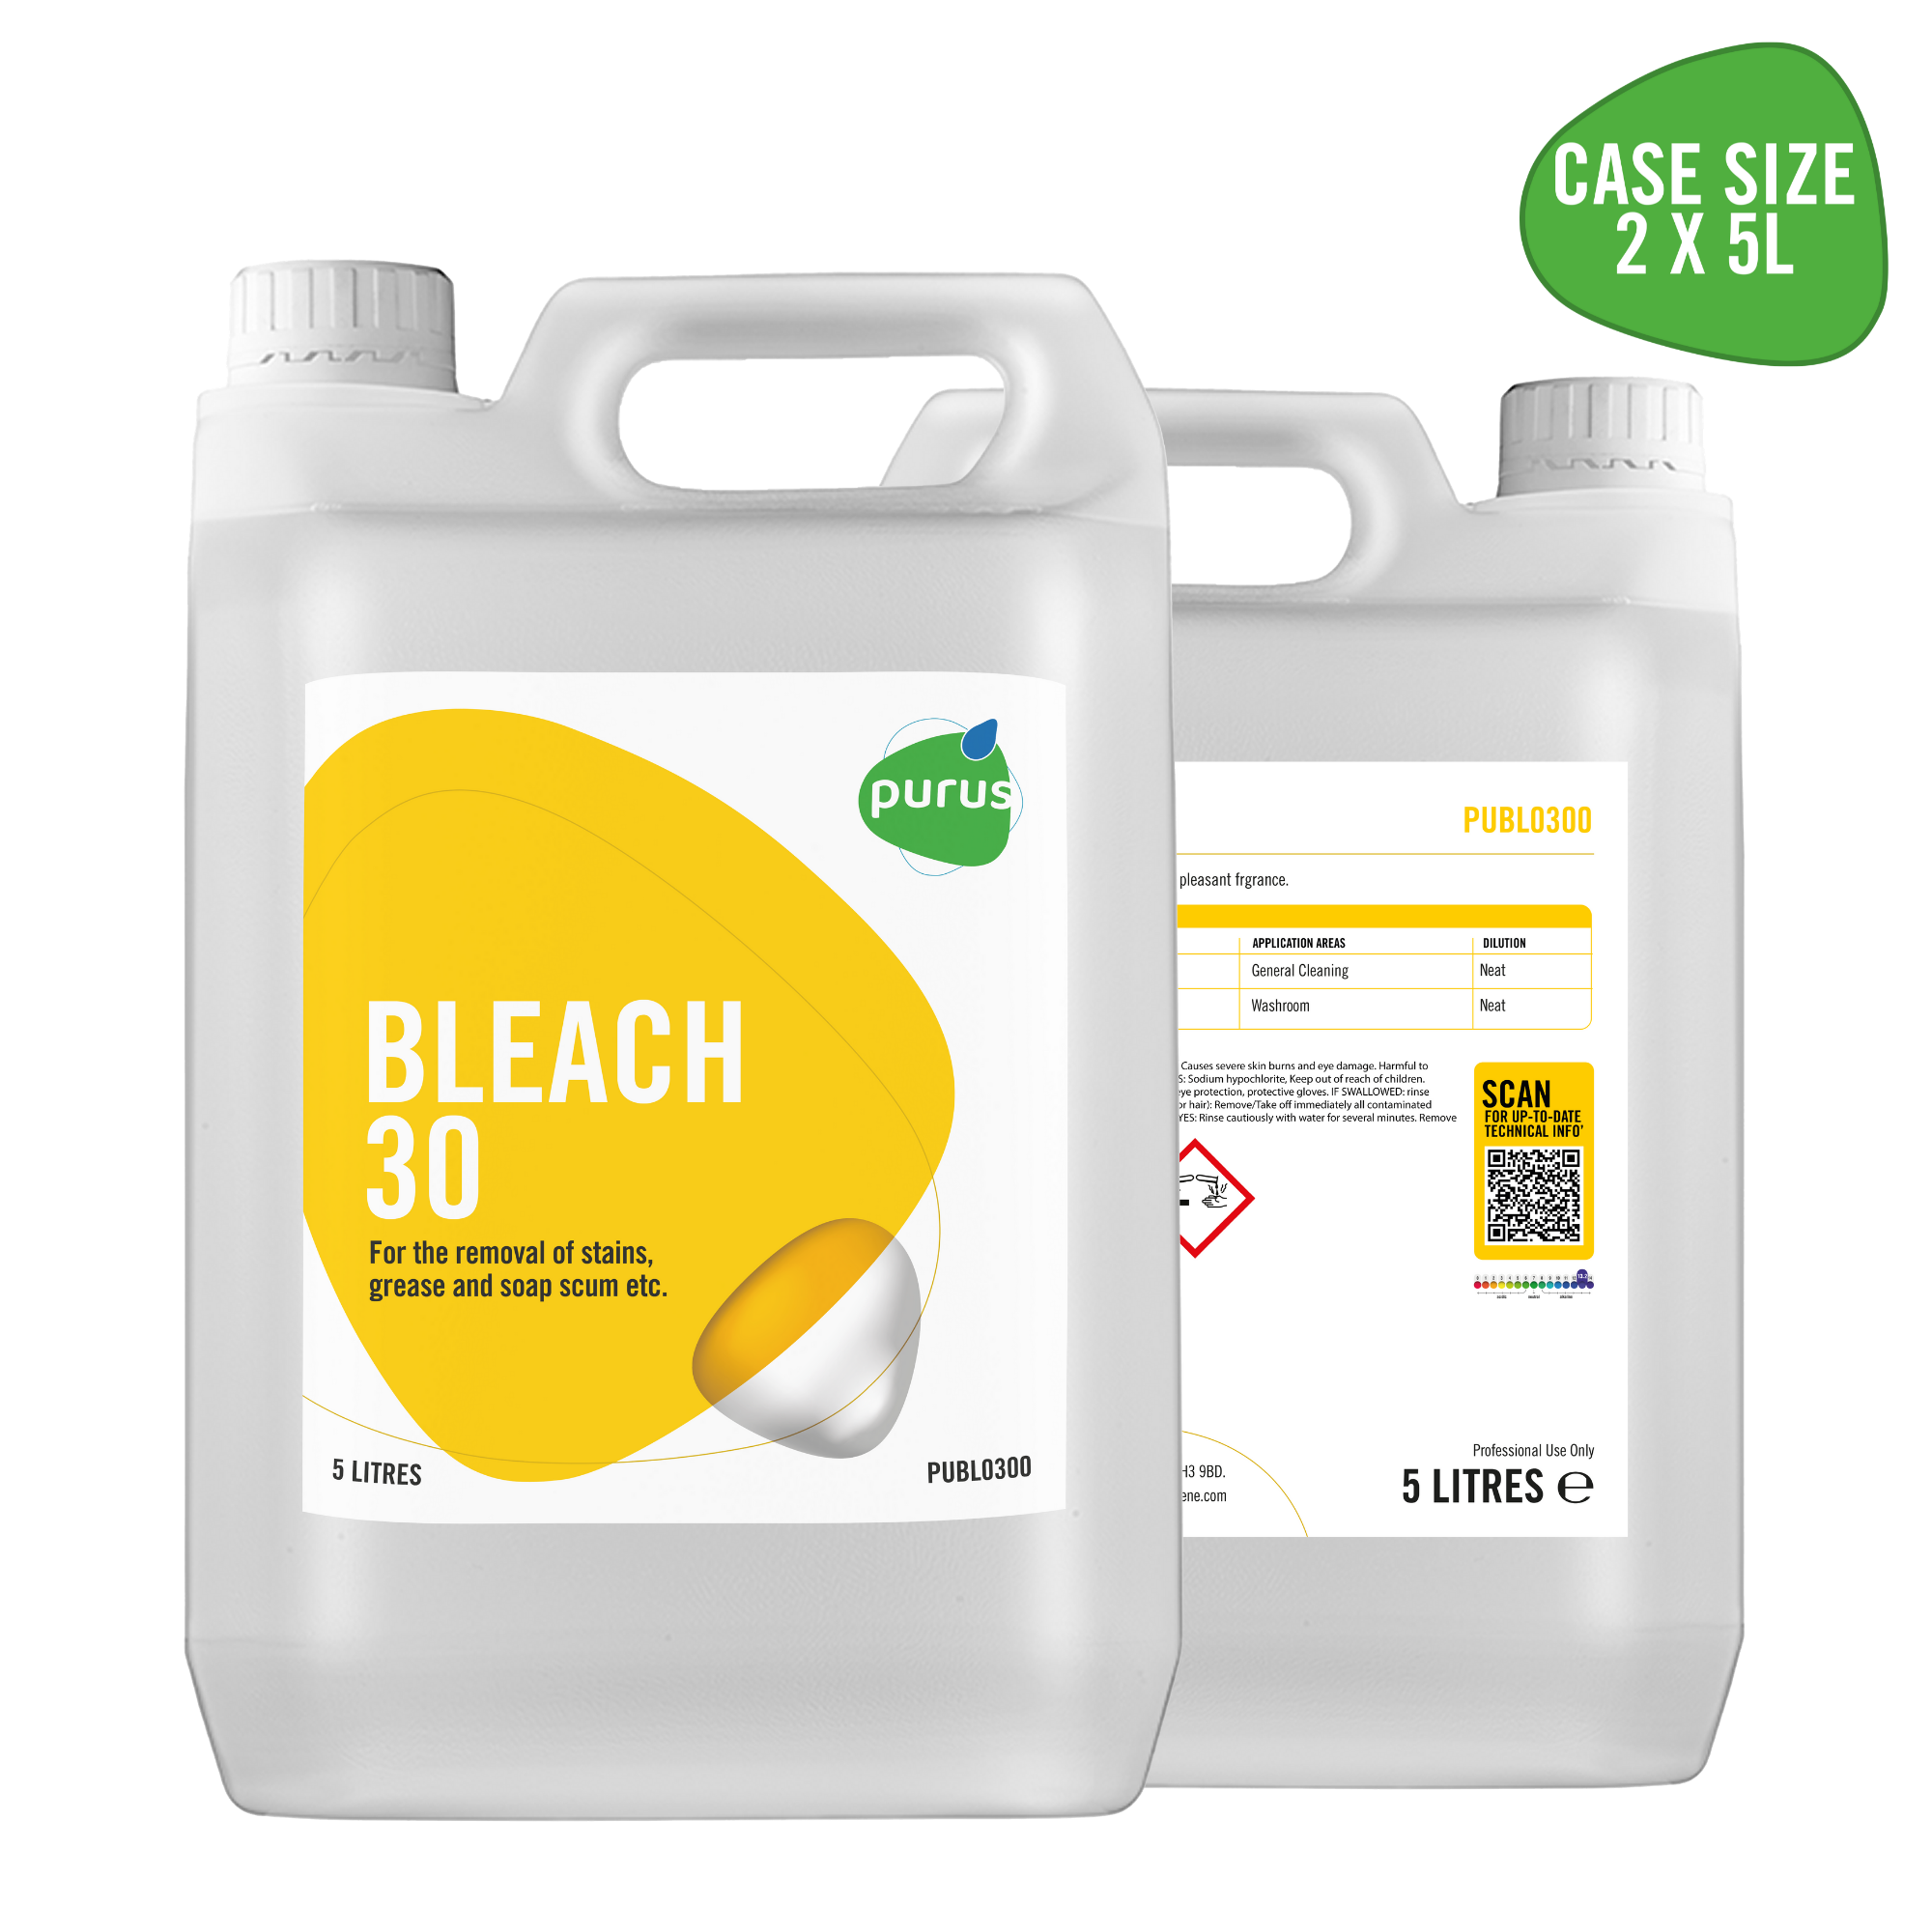 Purus Bleach 30 - Spray & Wipe With Bleach 2 x 5 Ltr